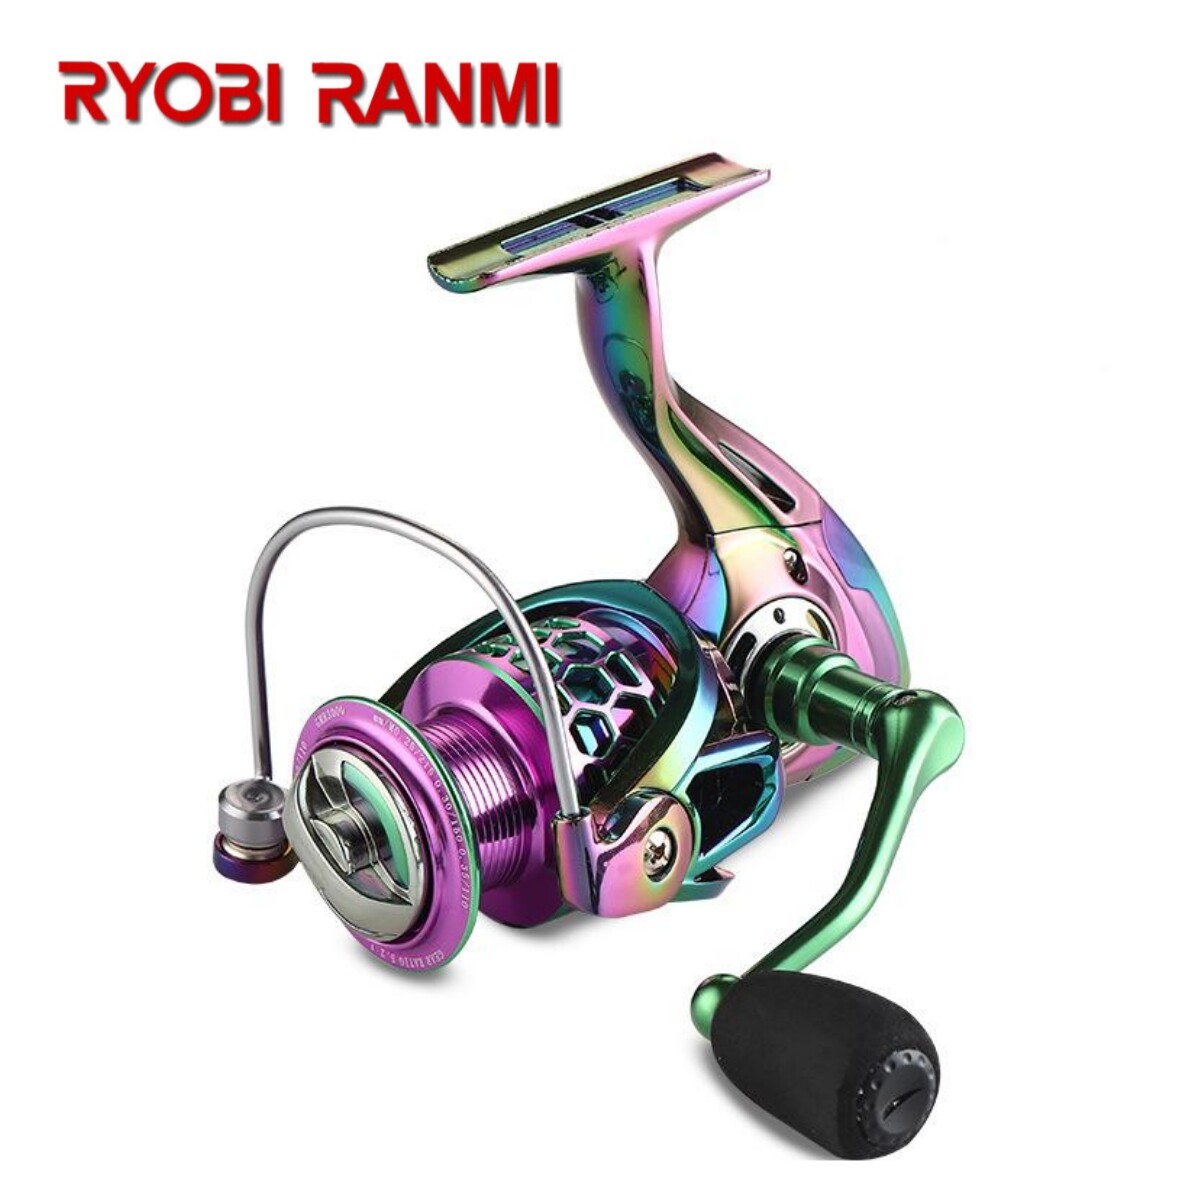 RYOBI RANMI HK Spinning Reels 8KG Max Drag 5.2:1 High Speed Metal